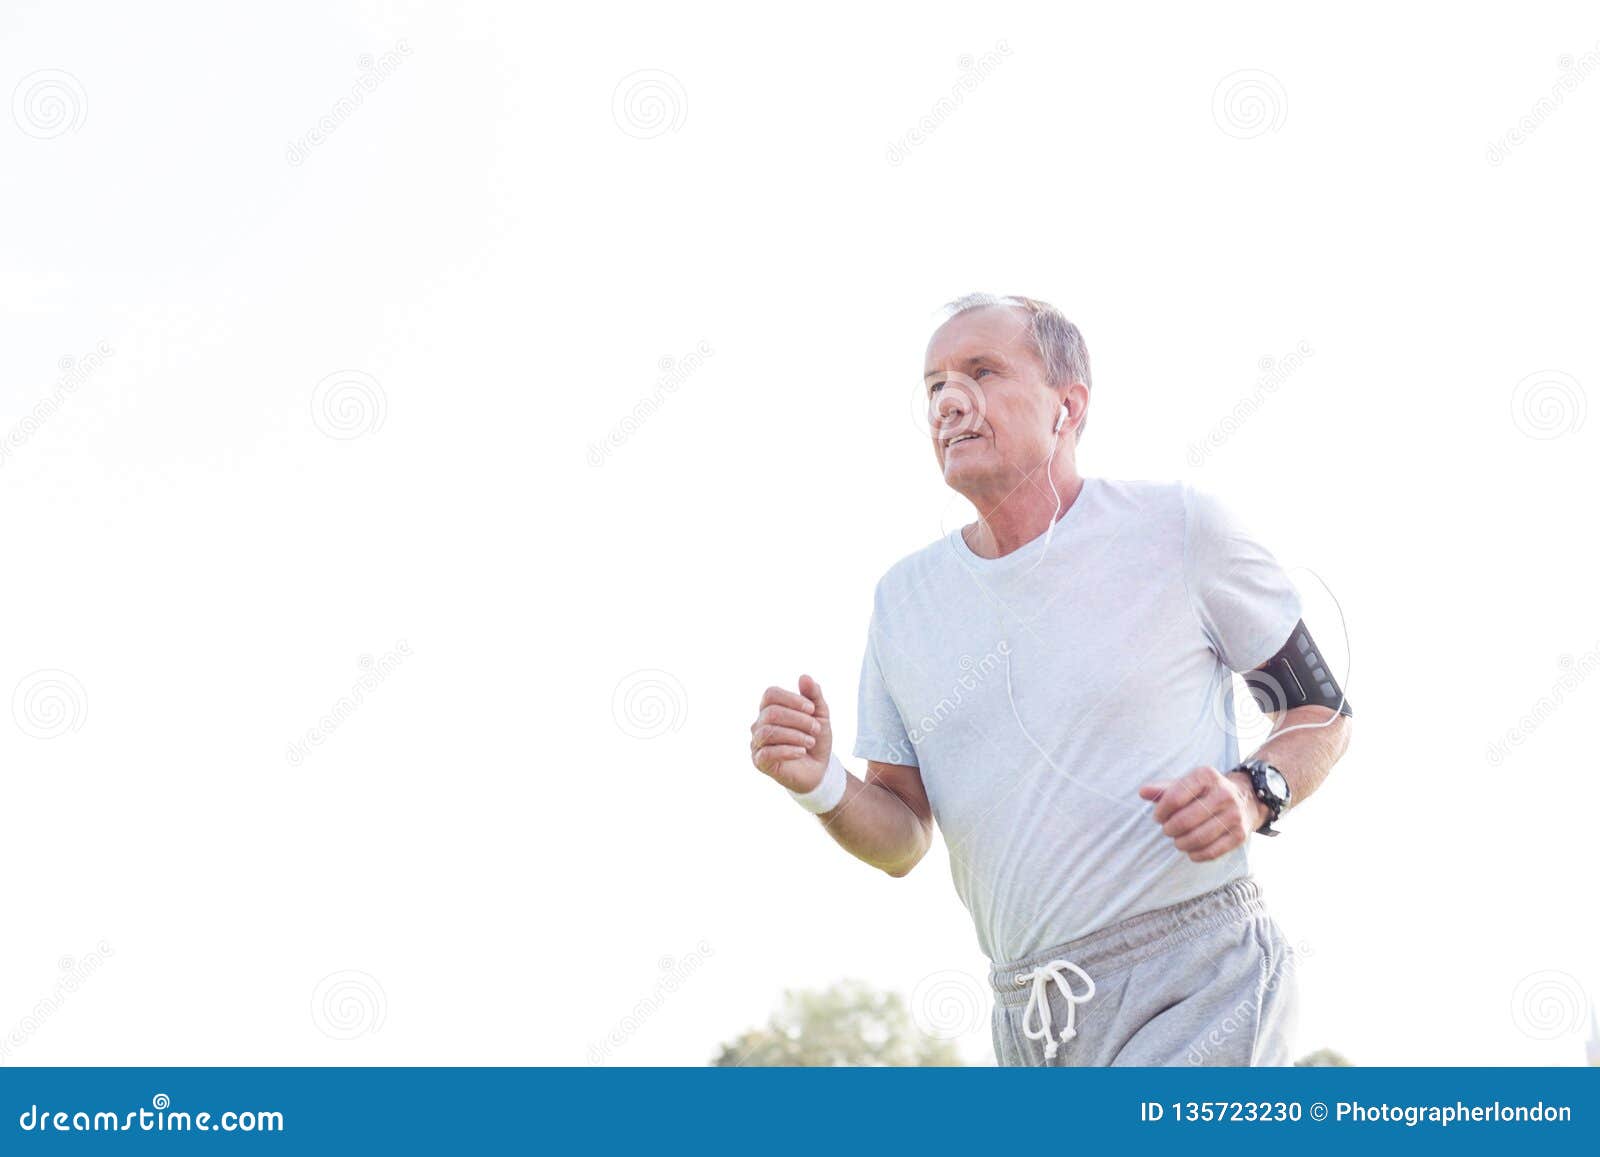 dedicated senior man jogging against sky